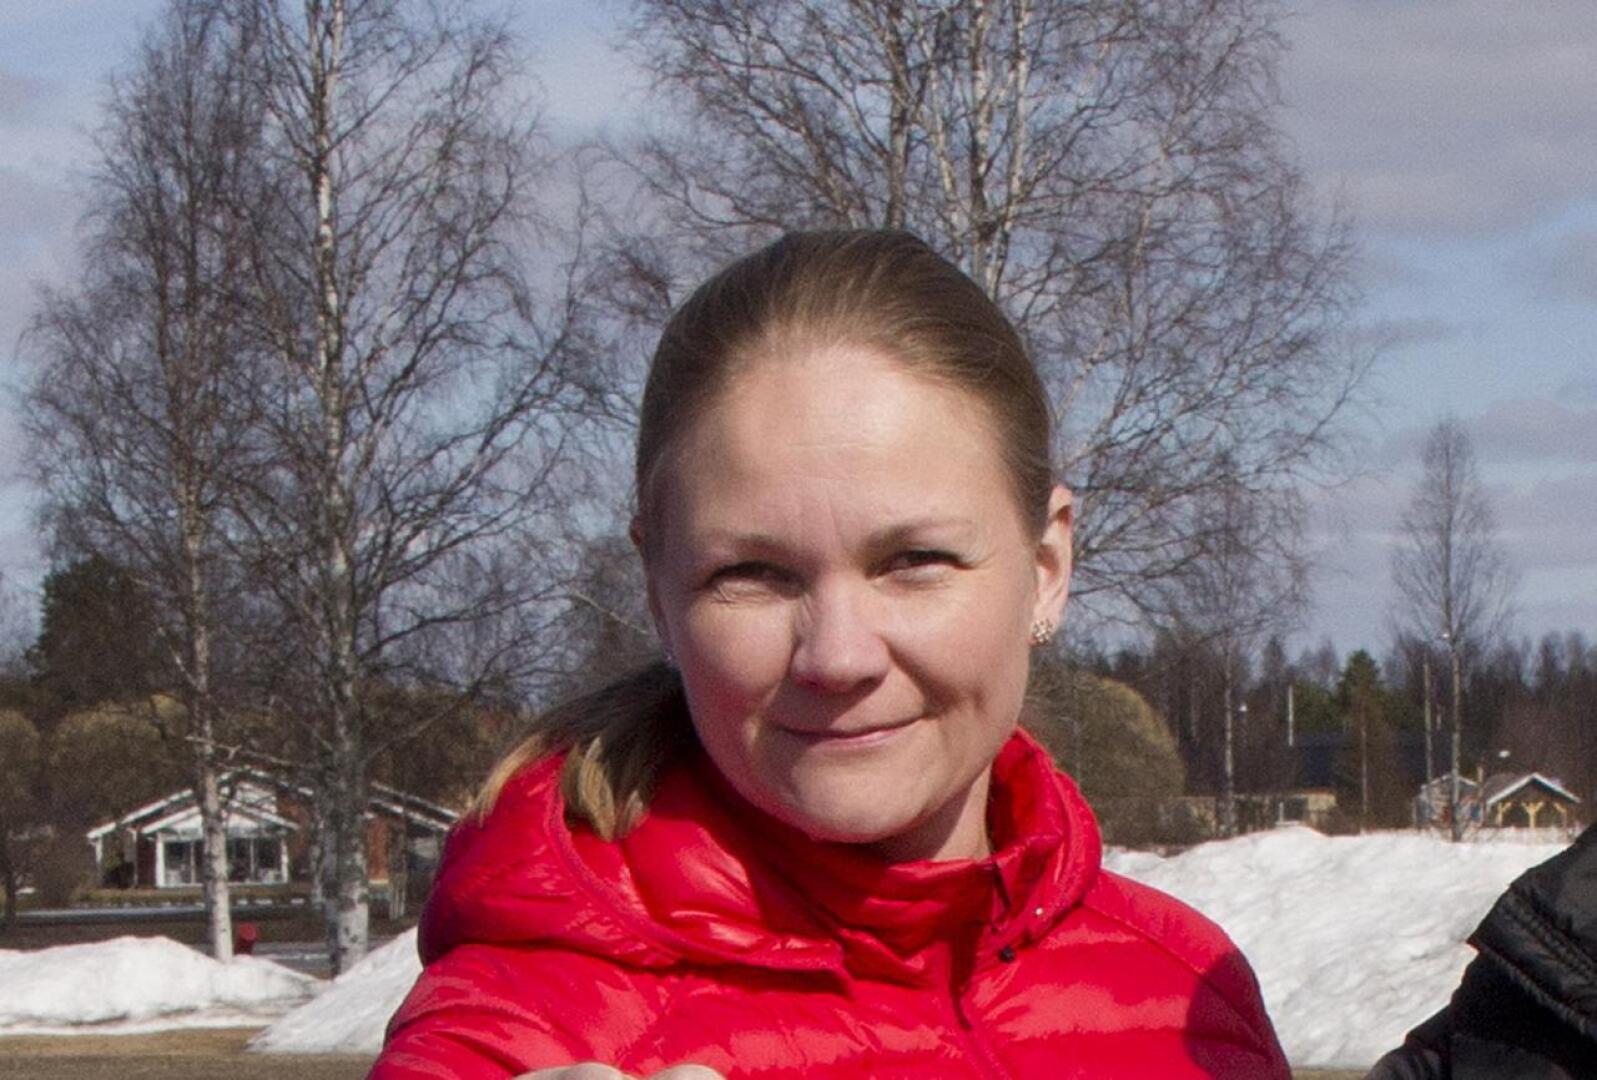 Vuoden nuorisovalmentajana Pesäpalloliitto palkitsi Ylivieskan Kuulan Johanna Seppälän.